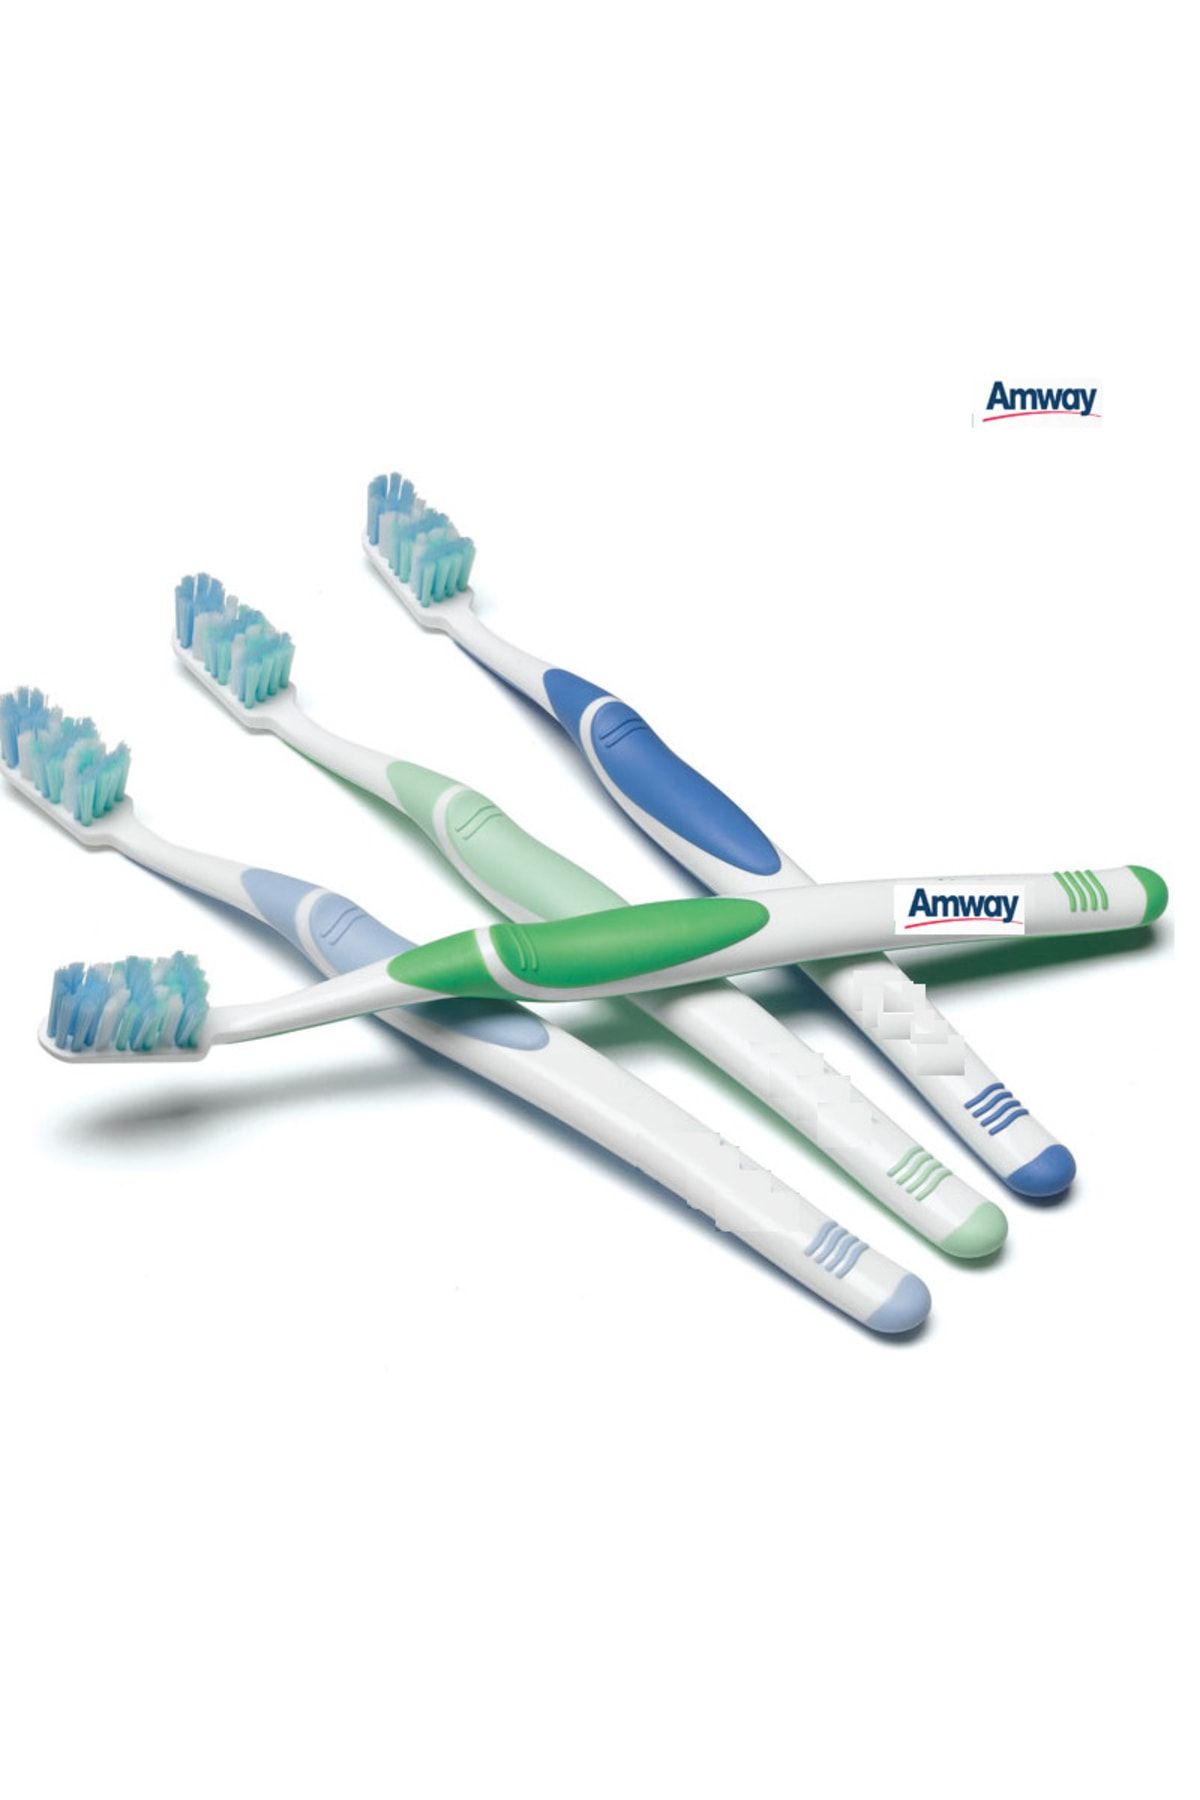 Amway Diş Fırçası Orta Sert 4 Adet Kutulu